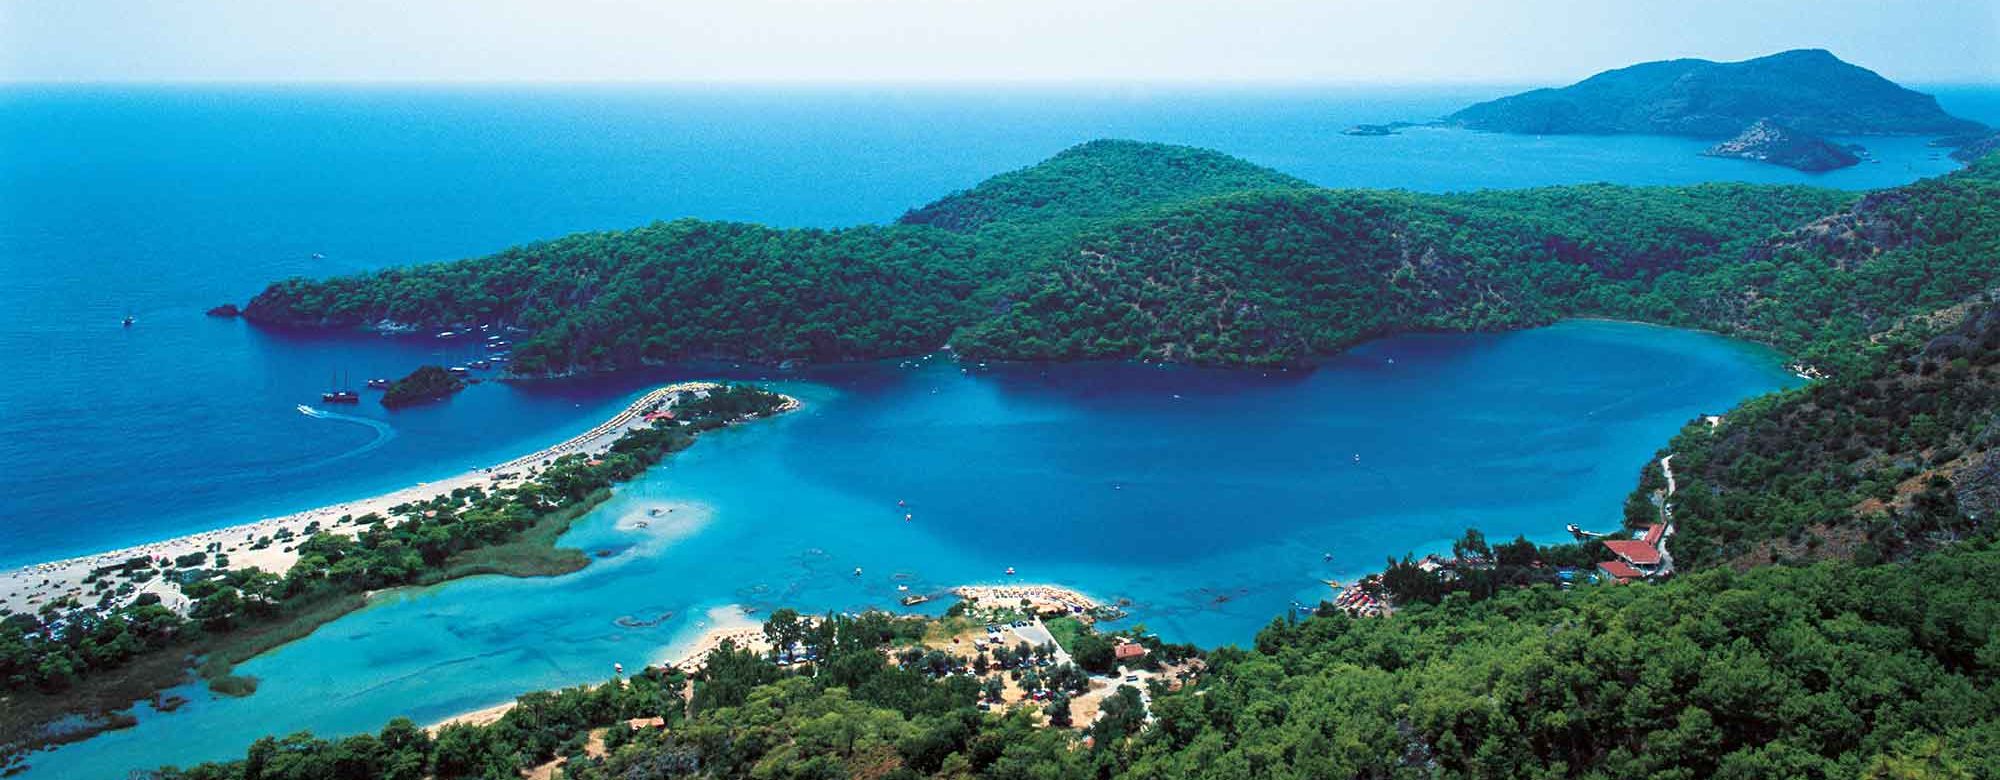 Эгейское море,Турция. Туры в Турцию, горящие путевки в Турцию, дешевые цены на отдых в Турции